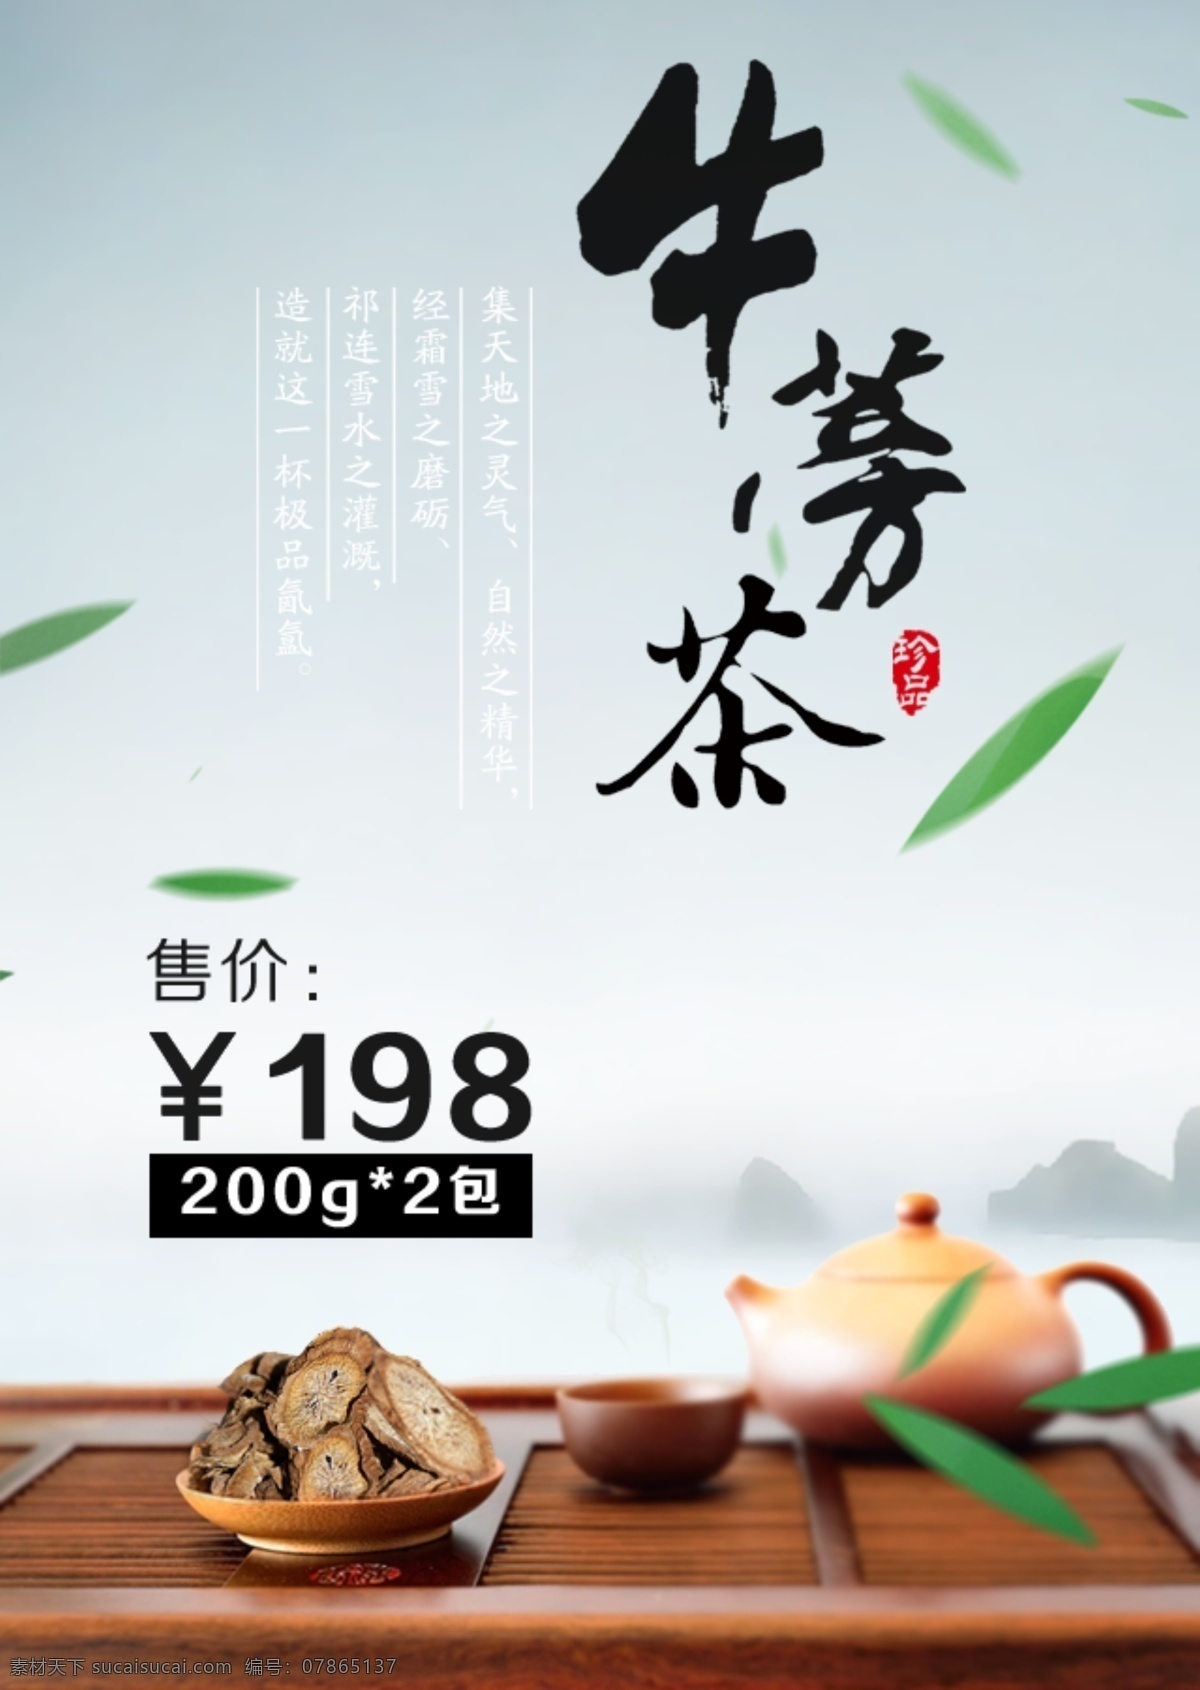 牛蒡茶 茶壶 茶 牛蒡 淘宝牛蒡茶 淘宝界面设计 淘宝 广告 banner